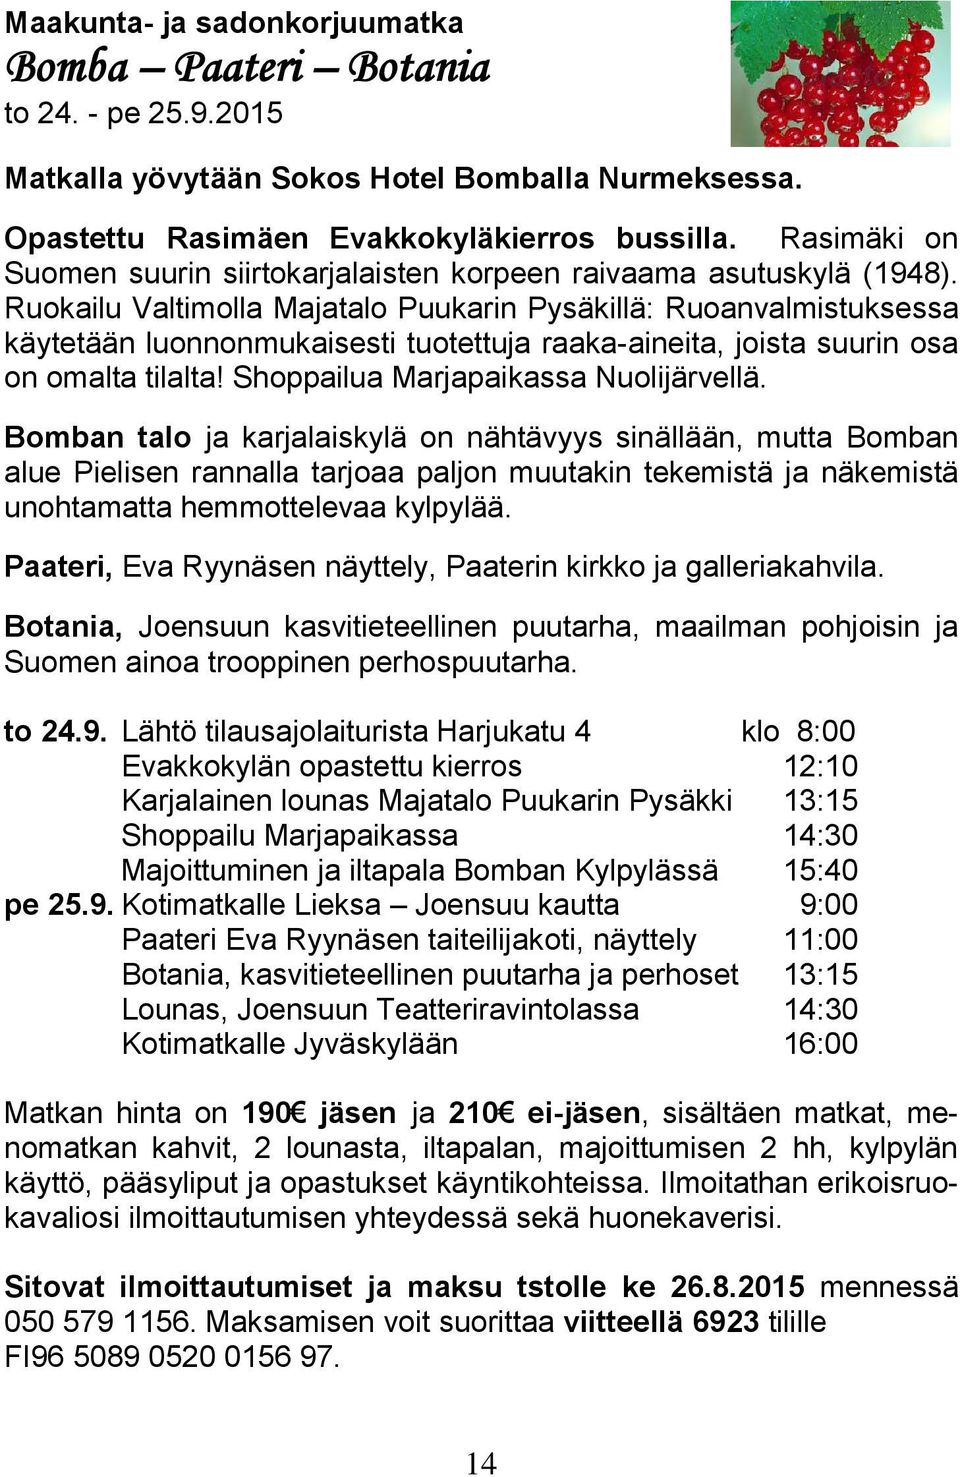 Ruokailu Valtimolla Majatalo Puukarin Pysäkillä: Ruoanvalmistuksessa käytetään luonnonmukaisesti tuotettuja raaka-aineita, joista suurin osa on omalta tilalta! Shoppailua Marjapaikassa Nuolijärvellä.